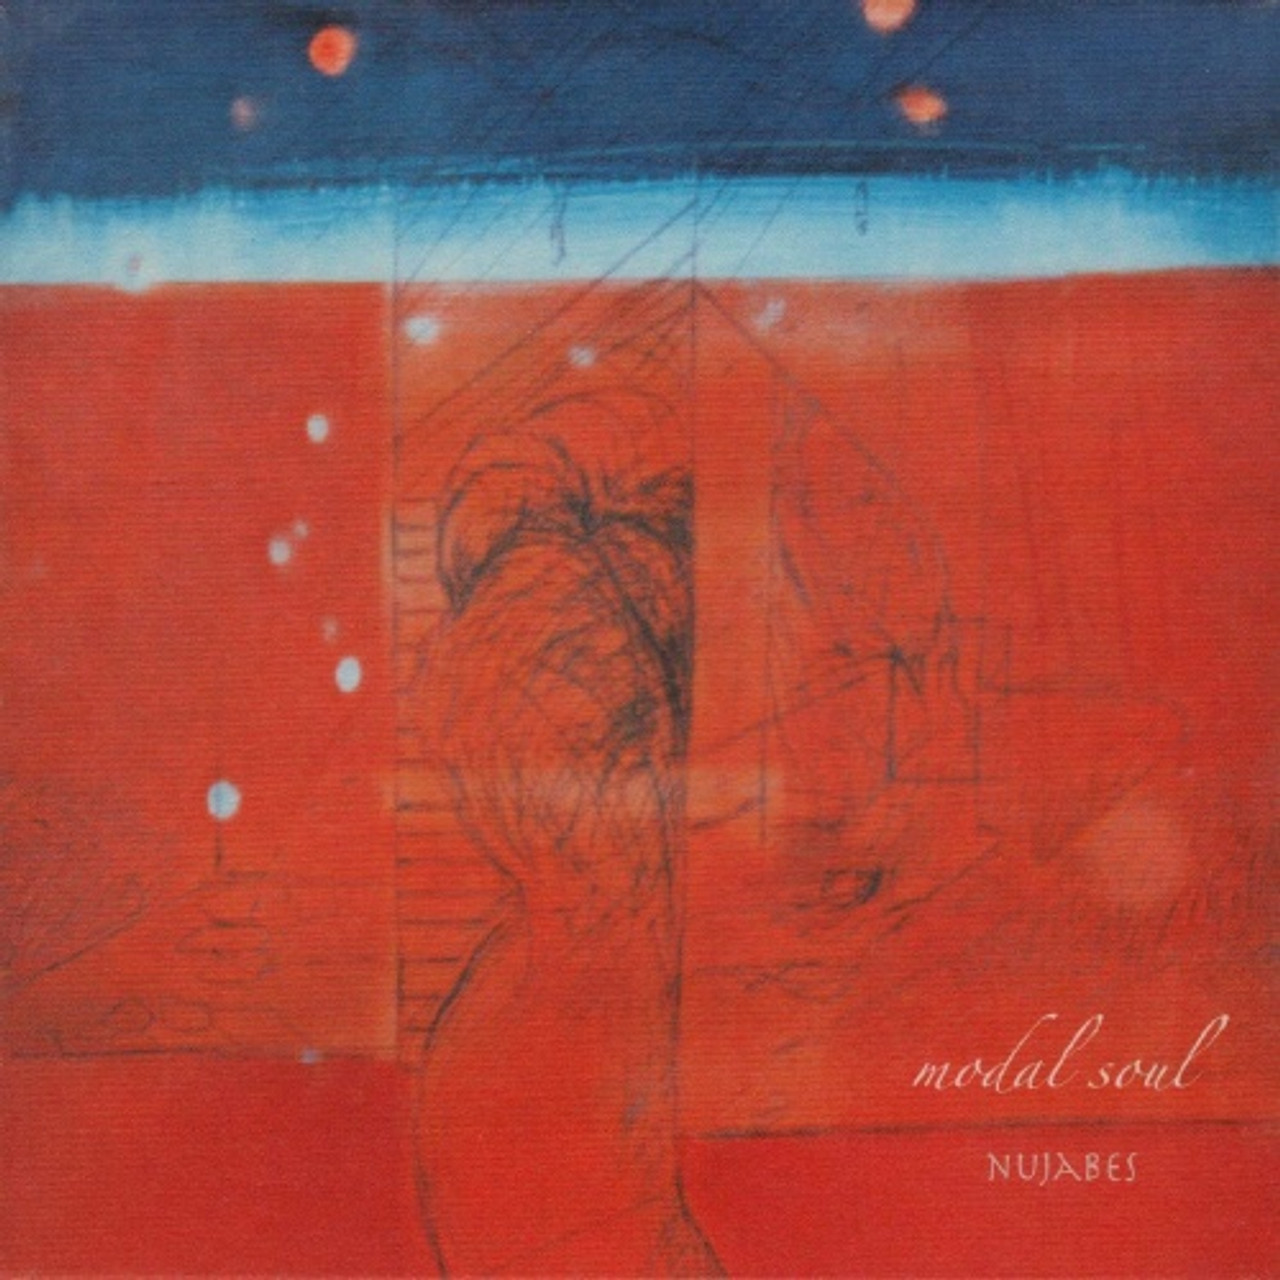 Nujabes - Modal Soul - 2x LP Vinyl